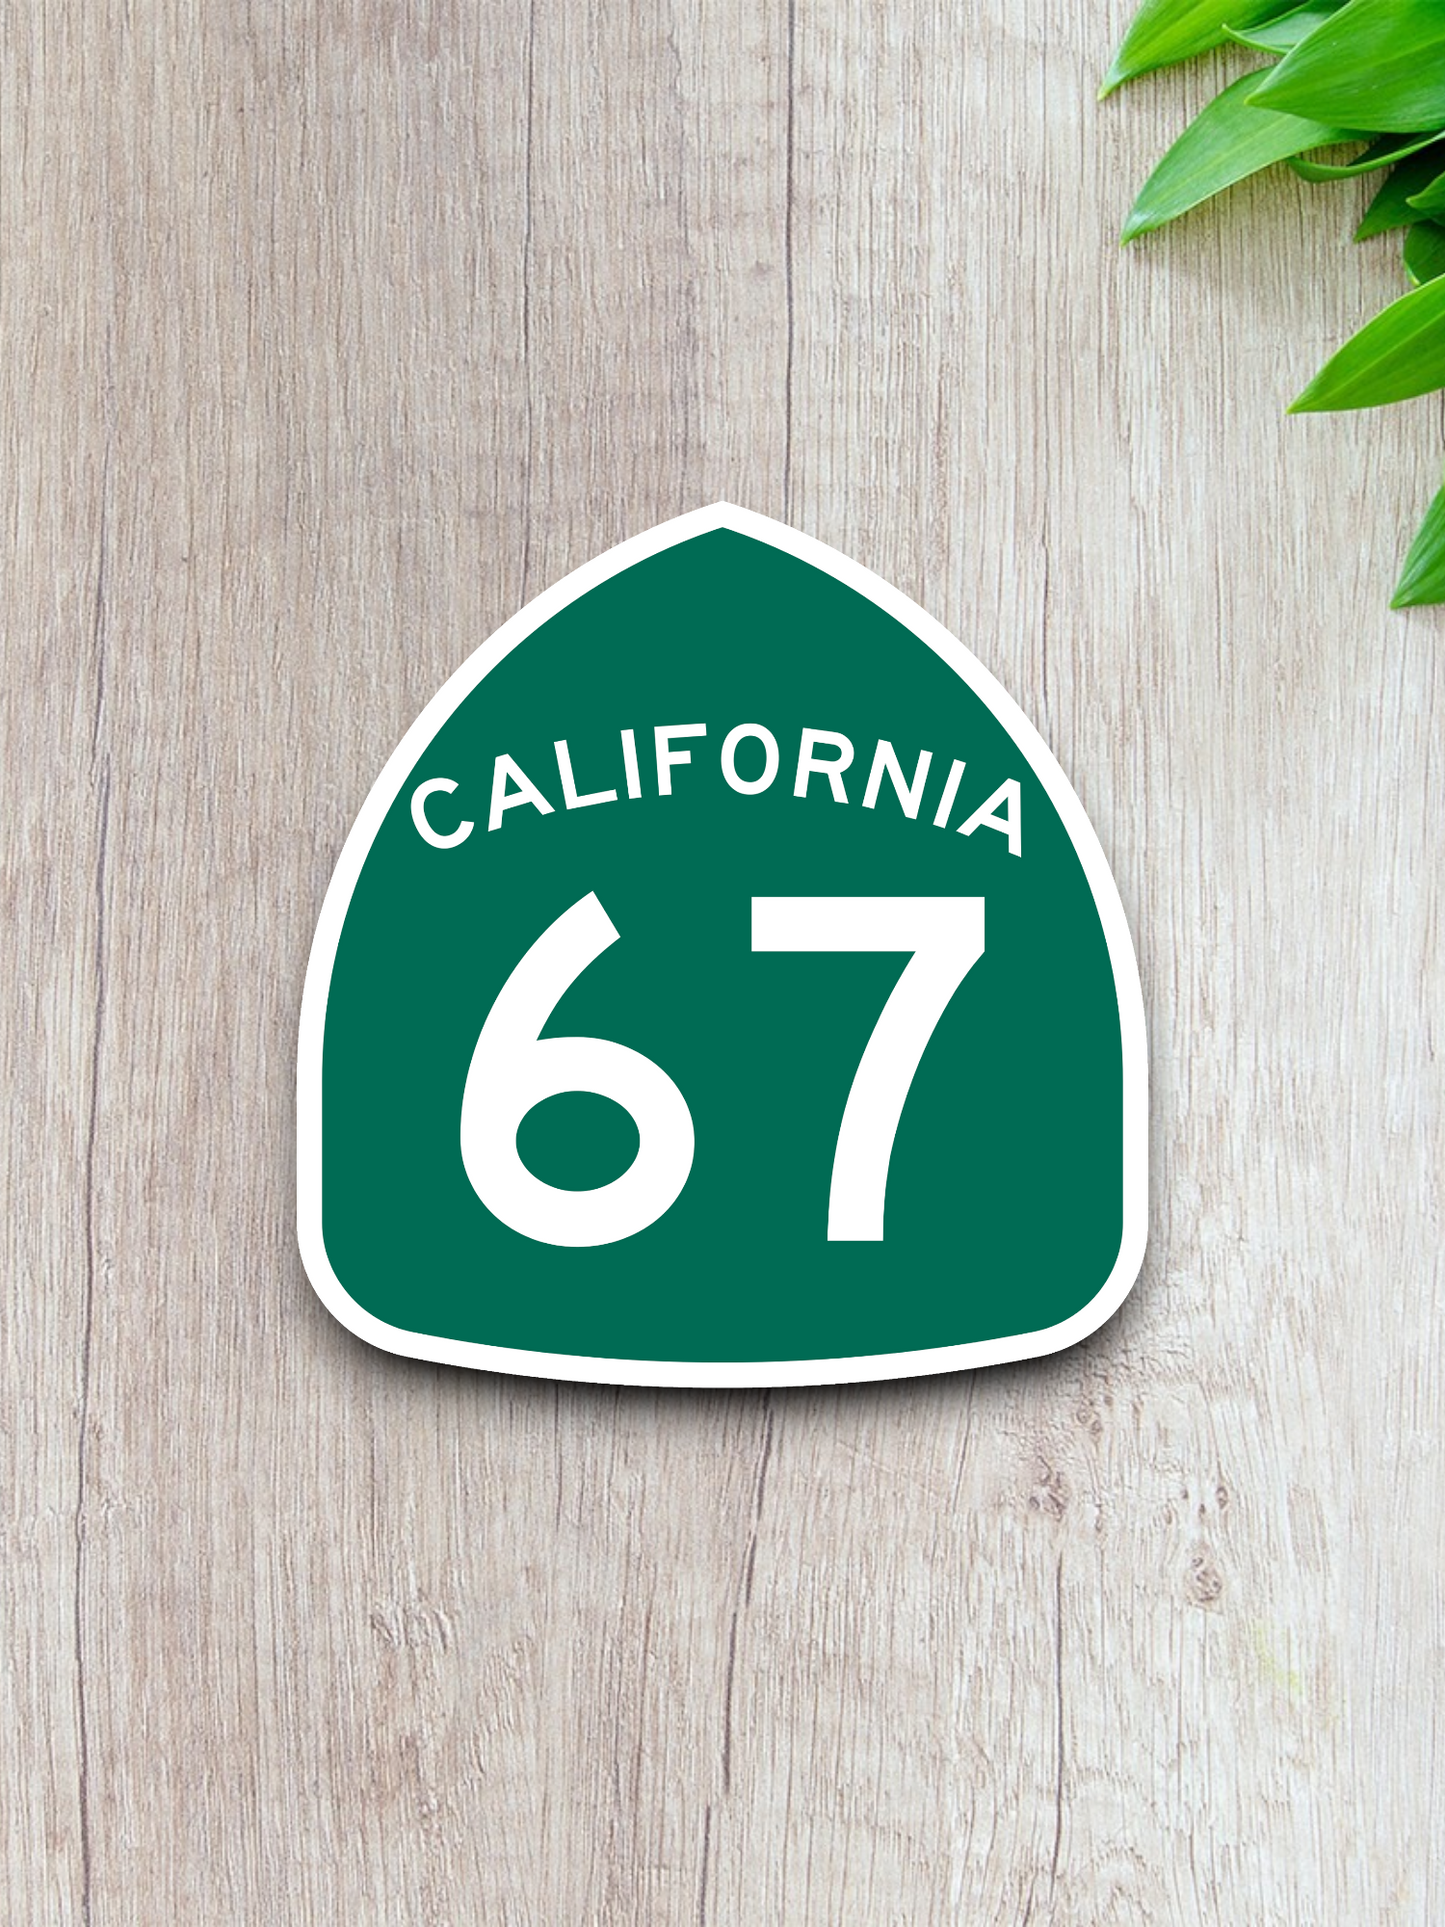 California State Route 67 Sticker